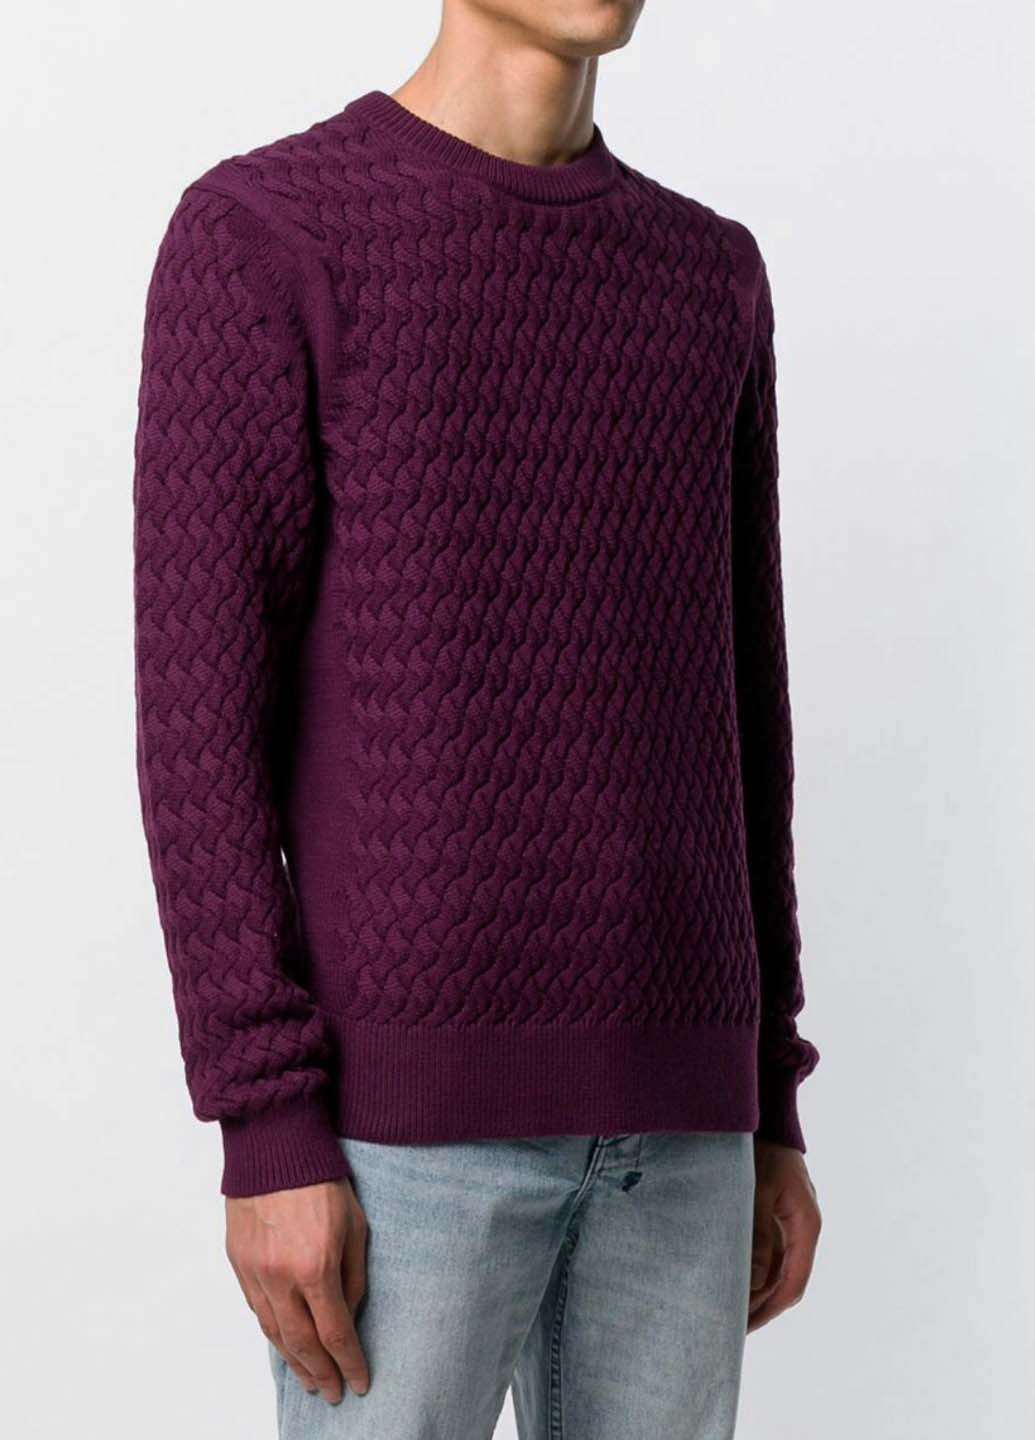 Сливовый демисезонный свитер Calvin Klein